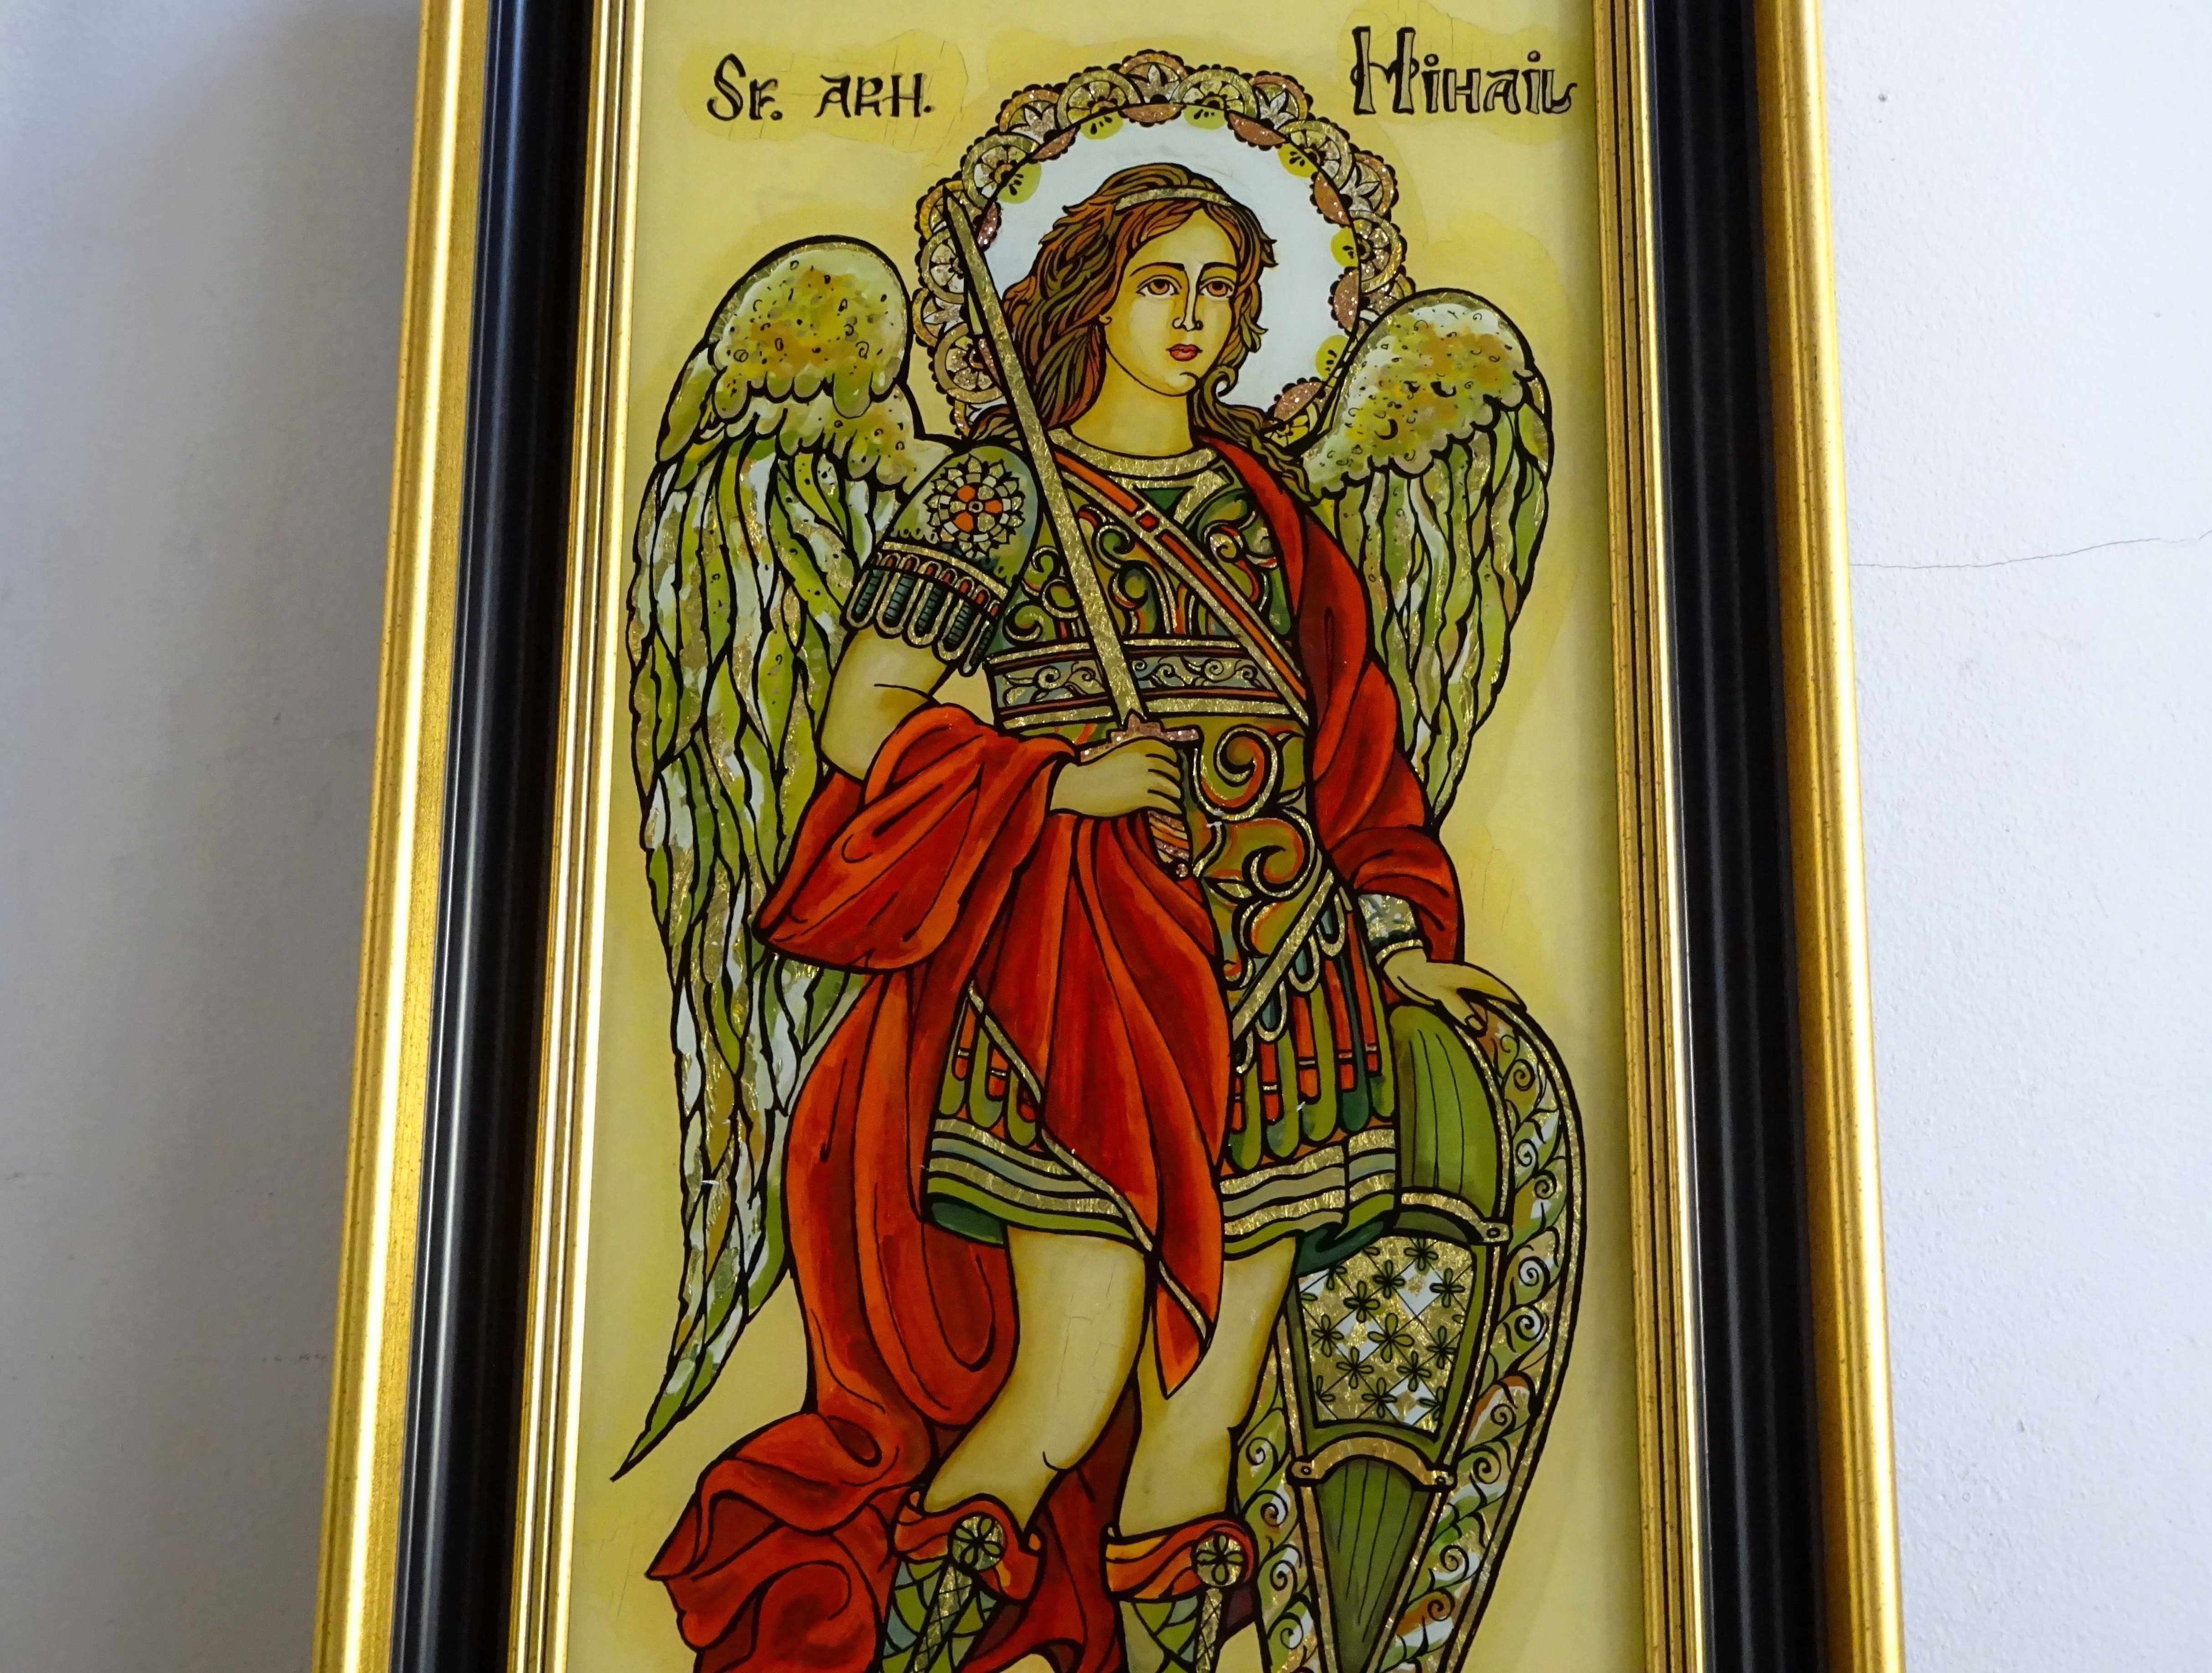 Icoana cu Sfantul Arhanghel Mihail, deosebit pictata pe sticla